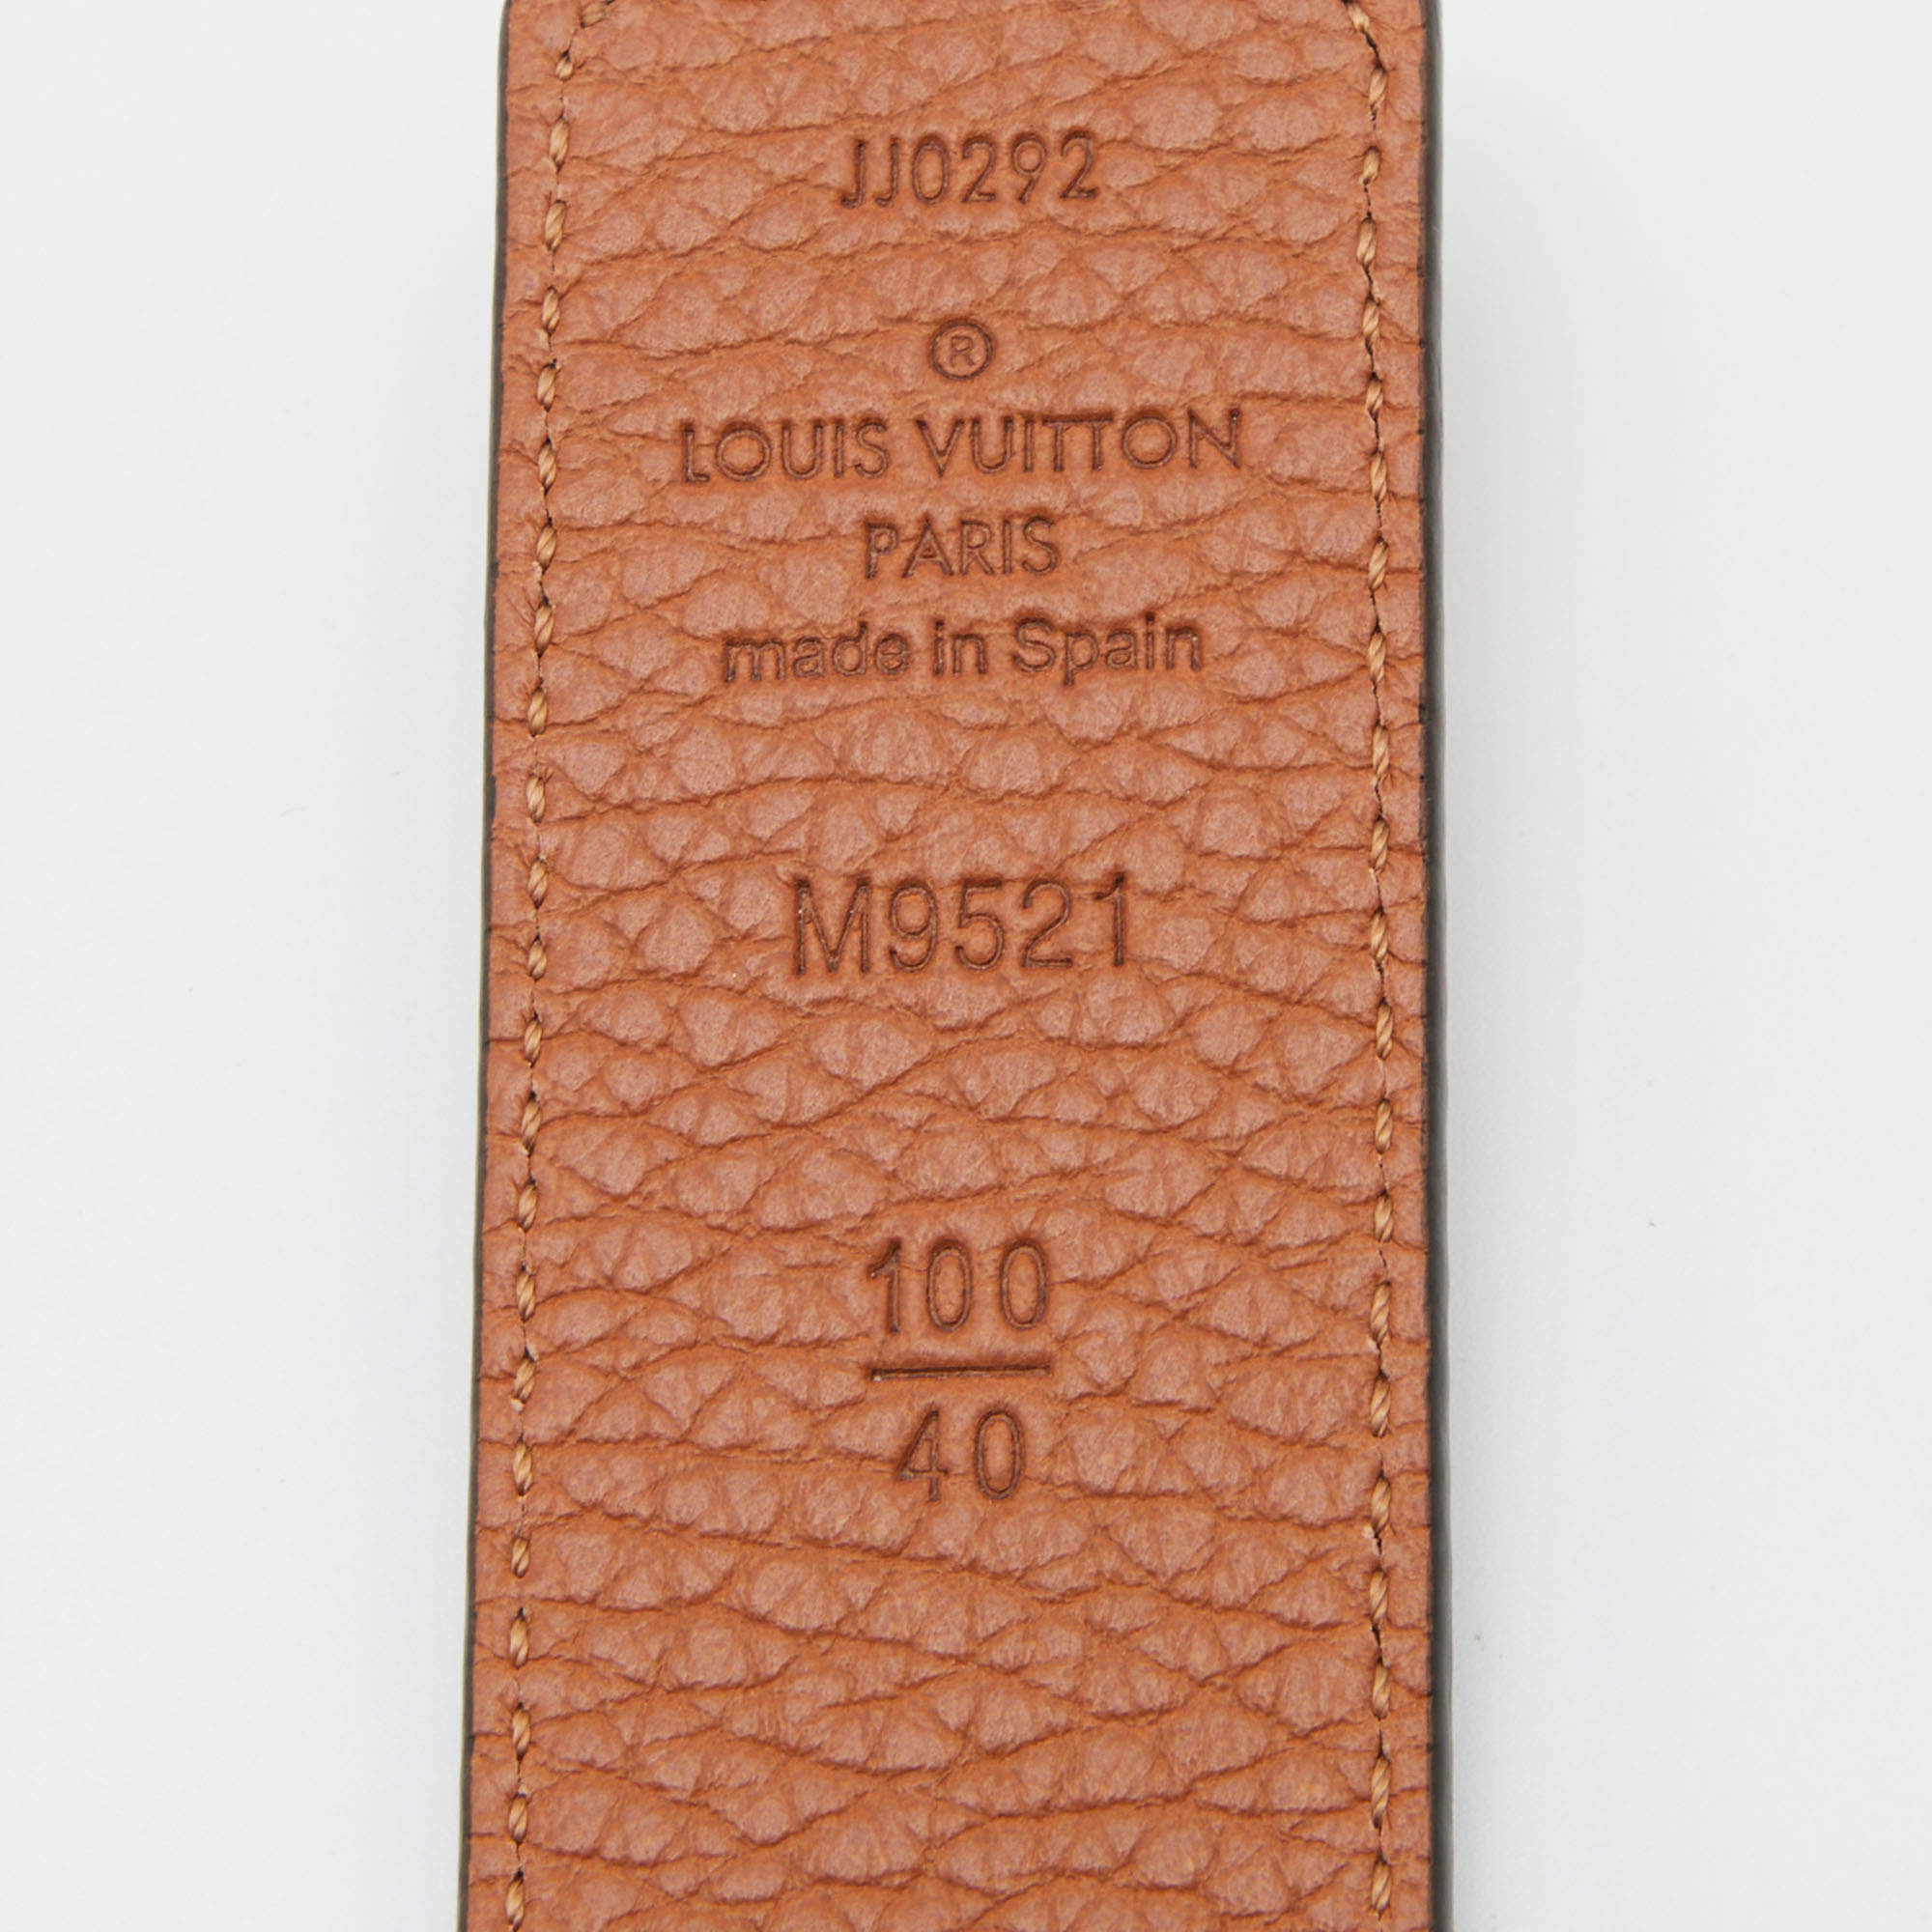 LOUIS VUITTON LOUIS VUITTON Belt LV Shape MP241 Monogram Canvas Leather  Black Brown MP241